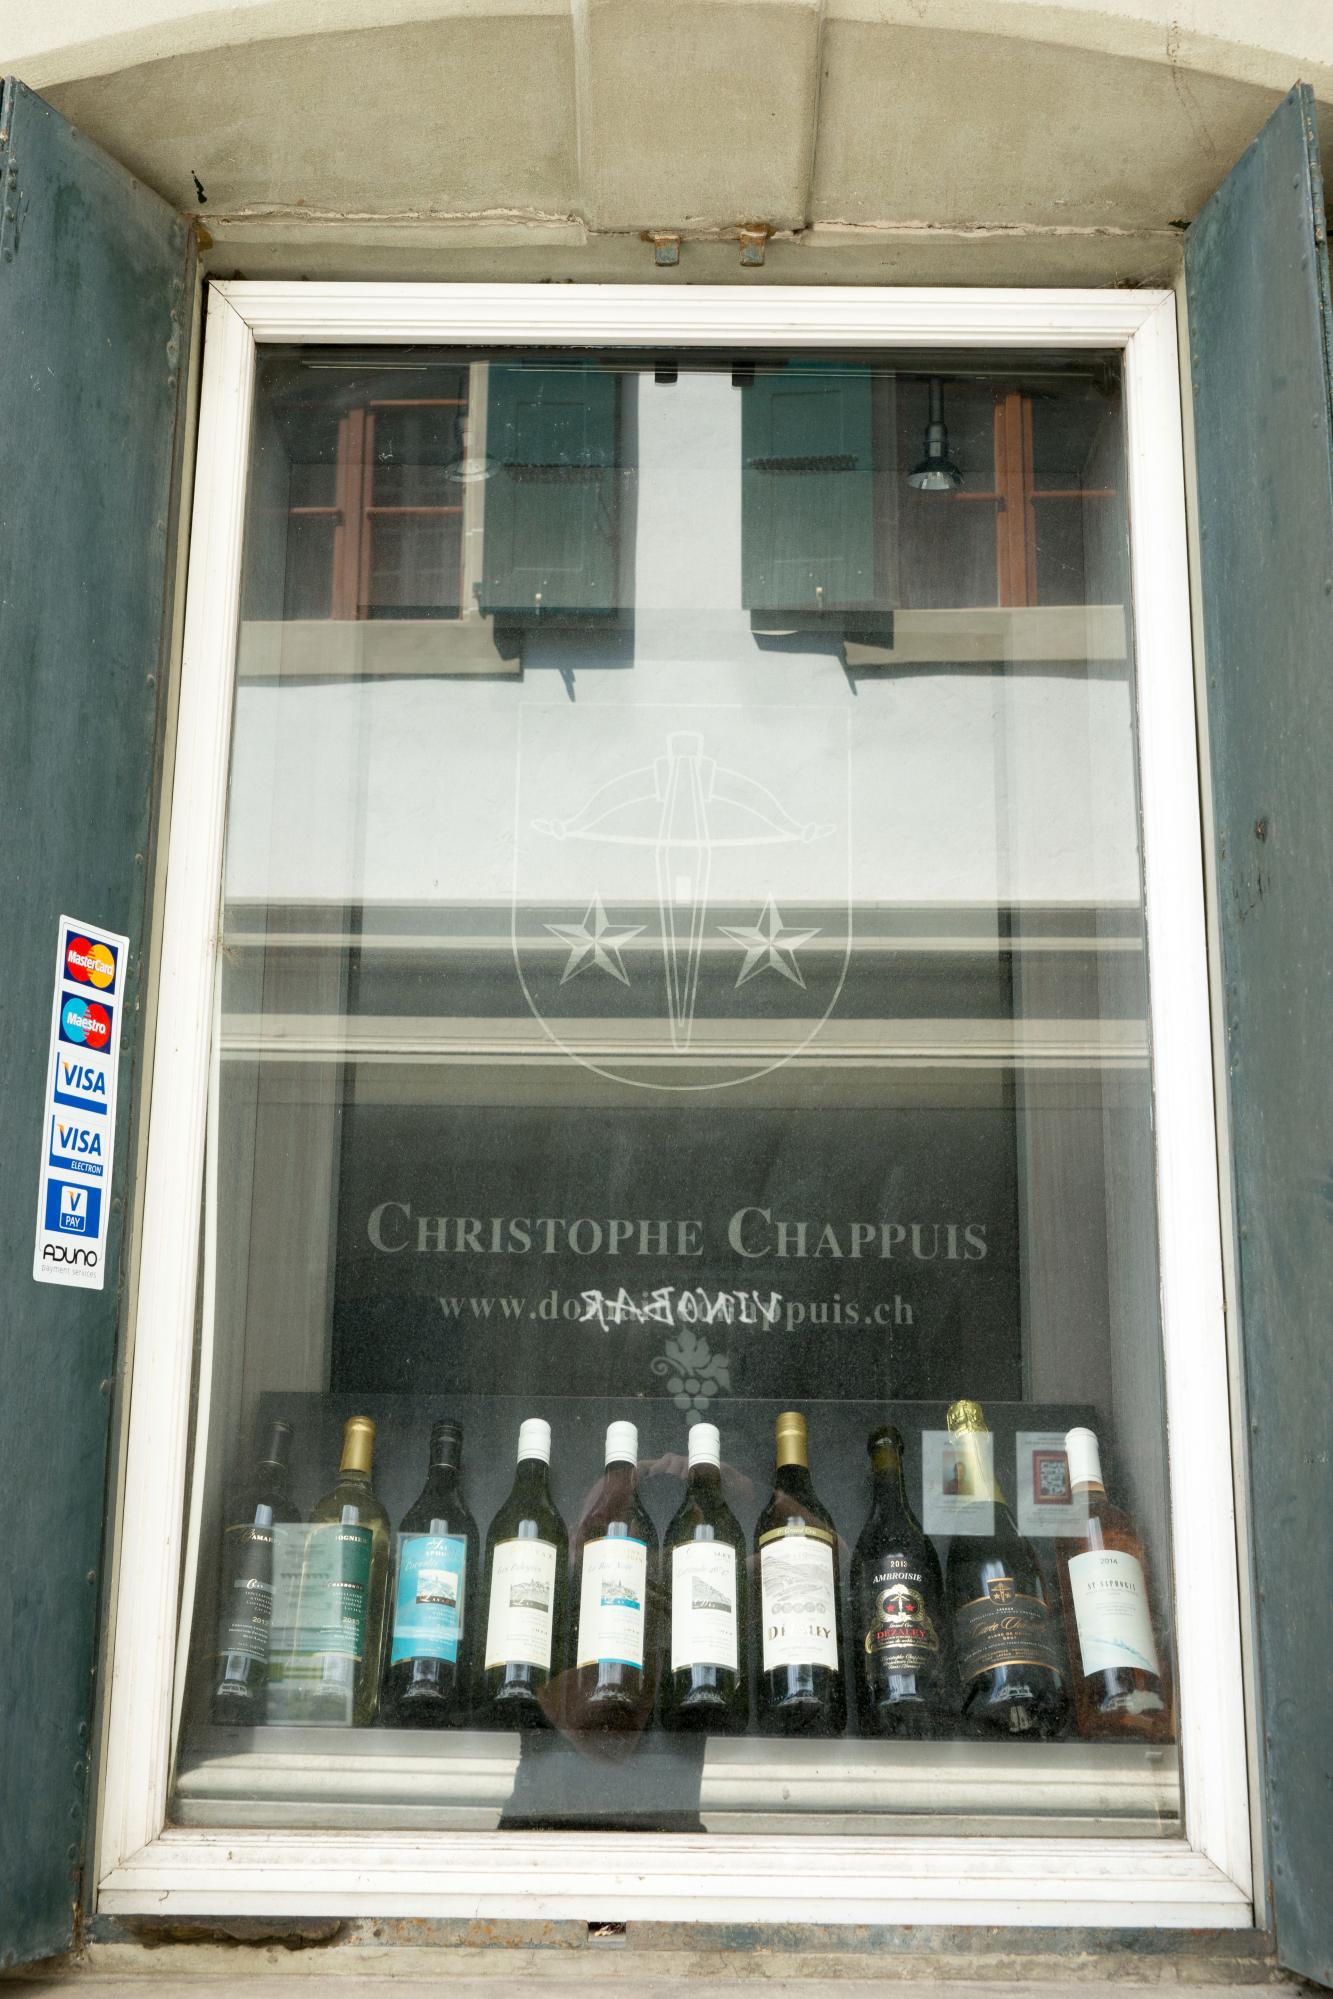 Cave Christophe Chappuis, Rivaz